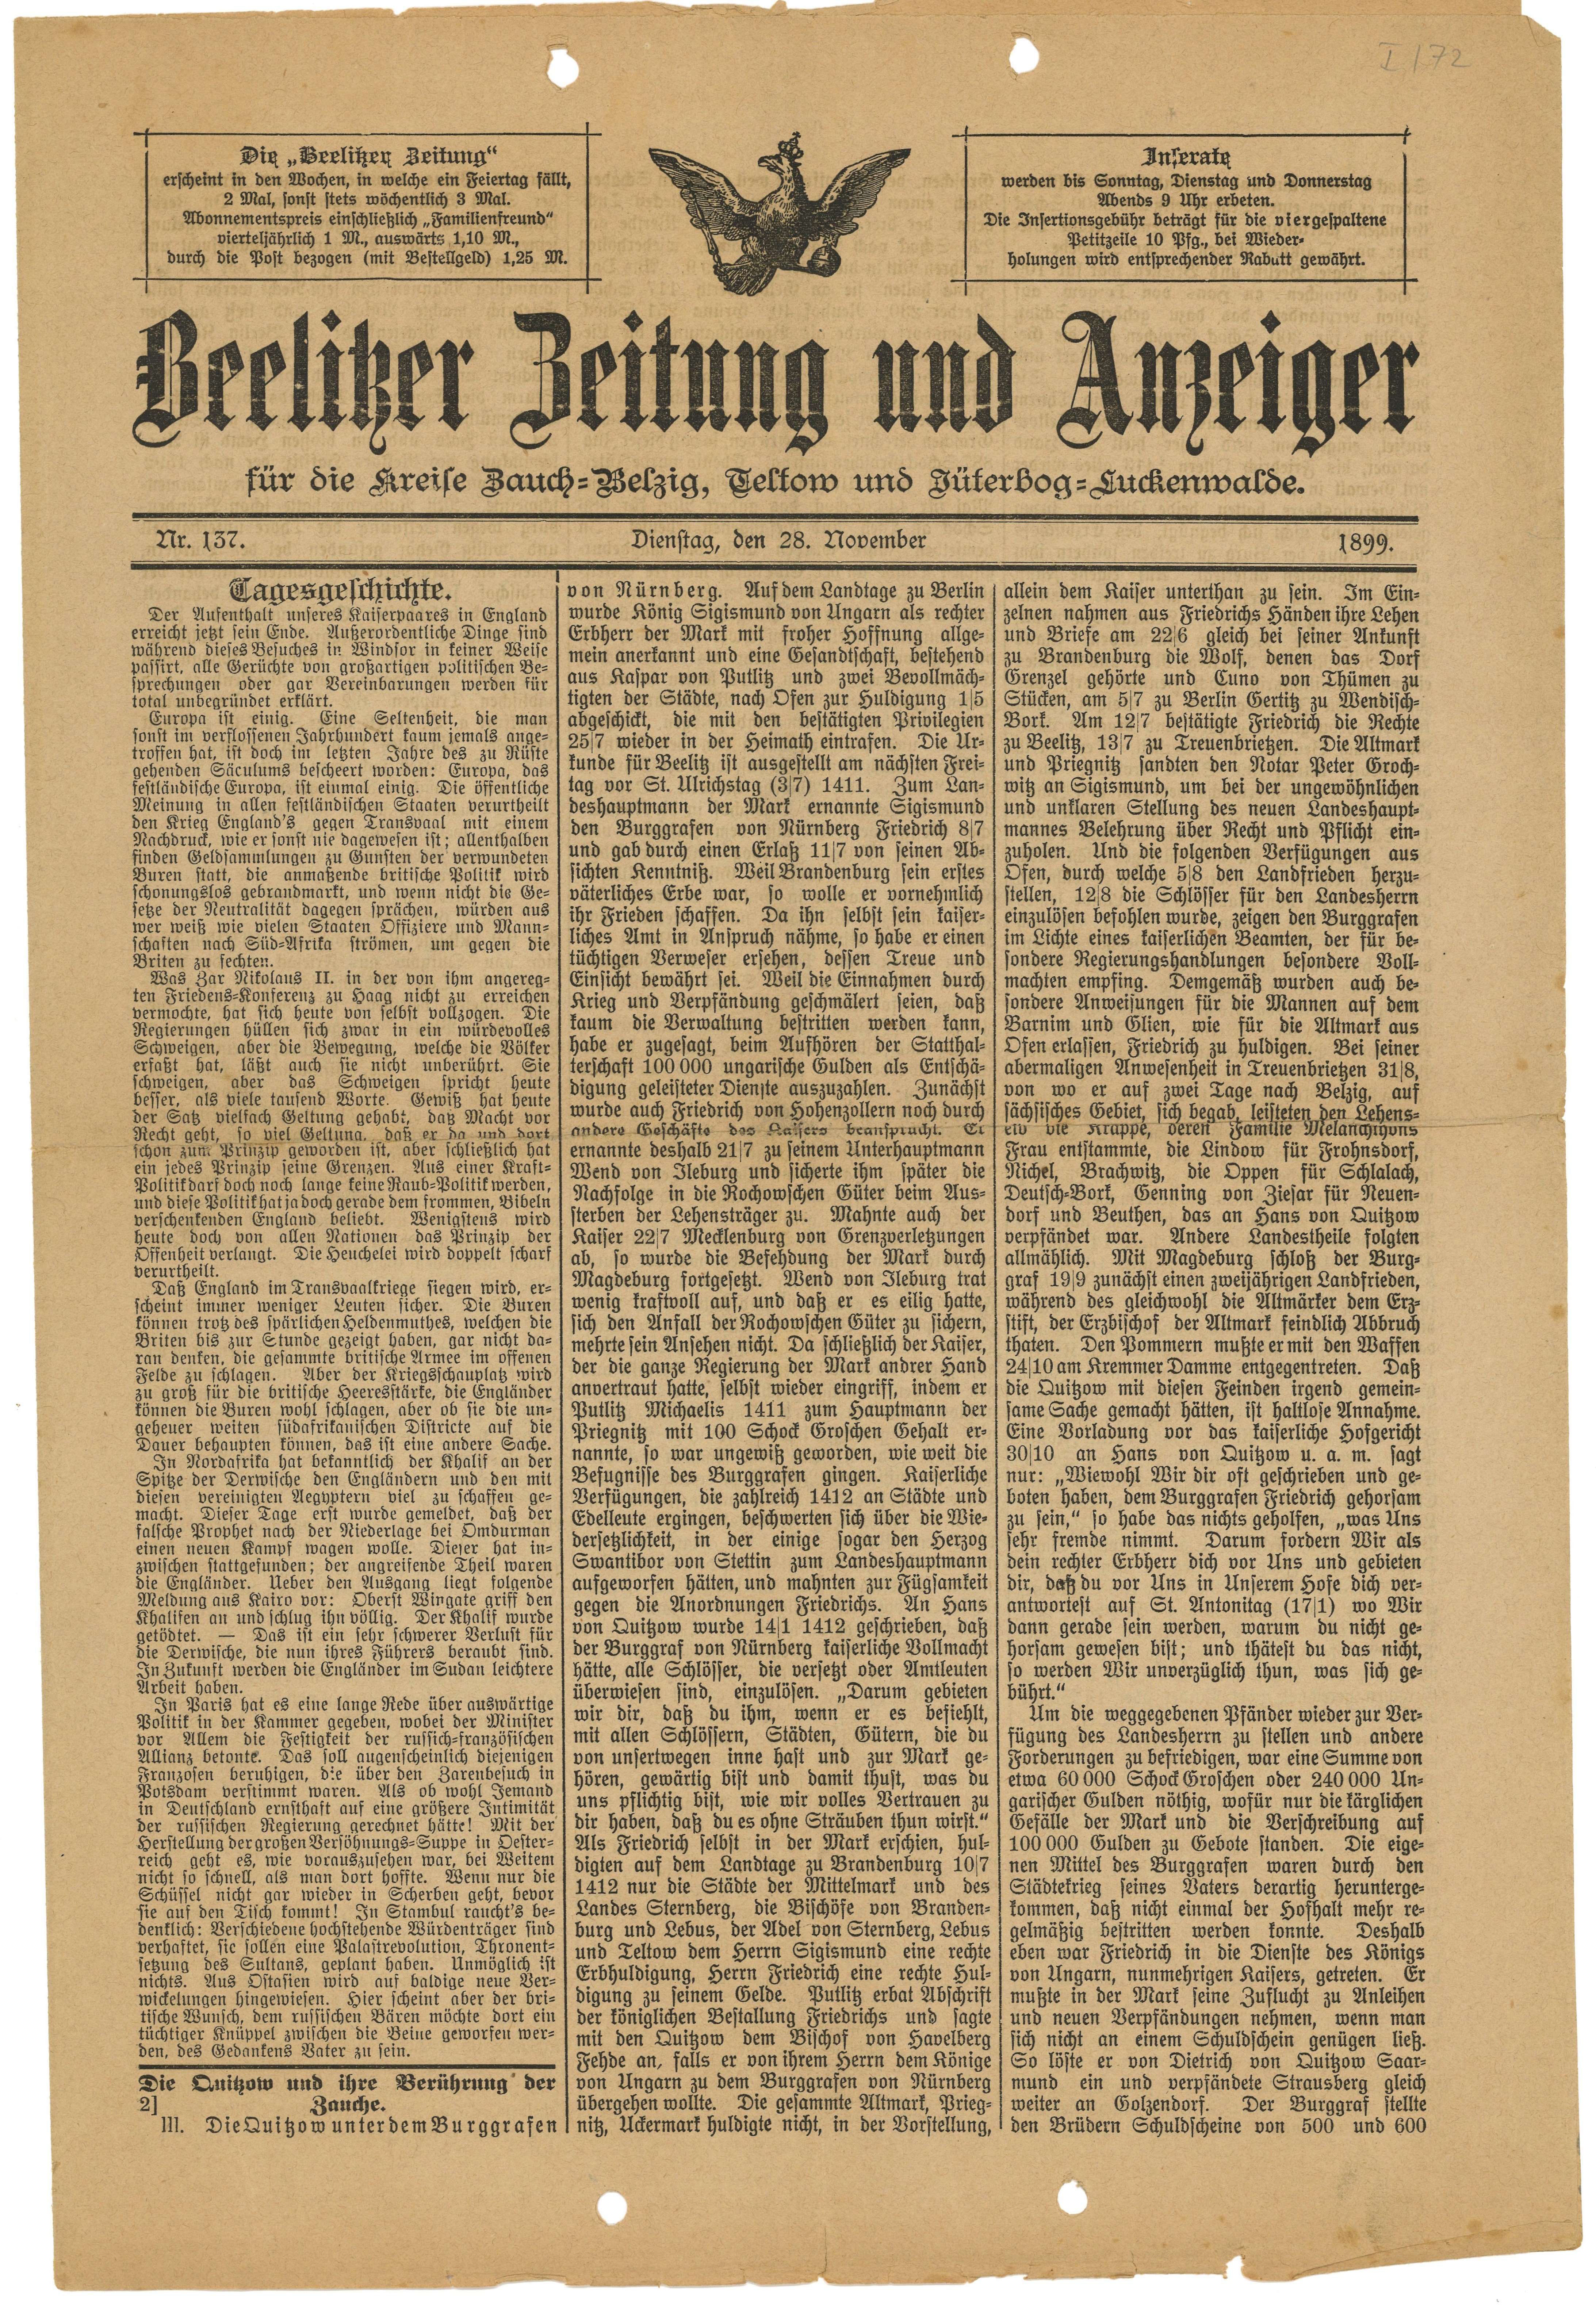 Beelitzer Zeitung und Anzeiger, Nr. 137, 28. November 1899 (Landesgeschichtliche Vereinigung für die Mark Brandenburg e.V., Archiv CC BY)